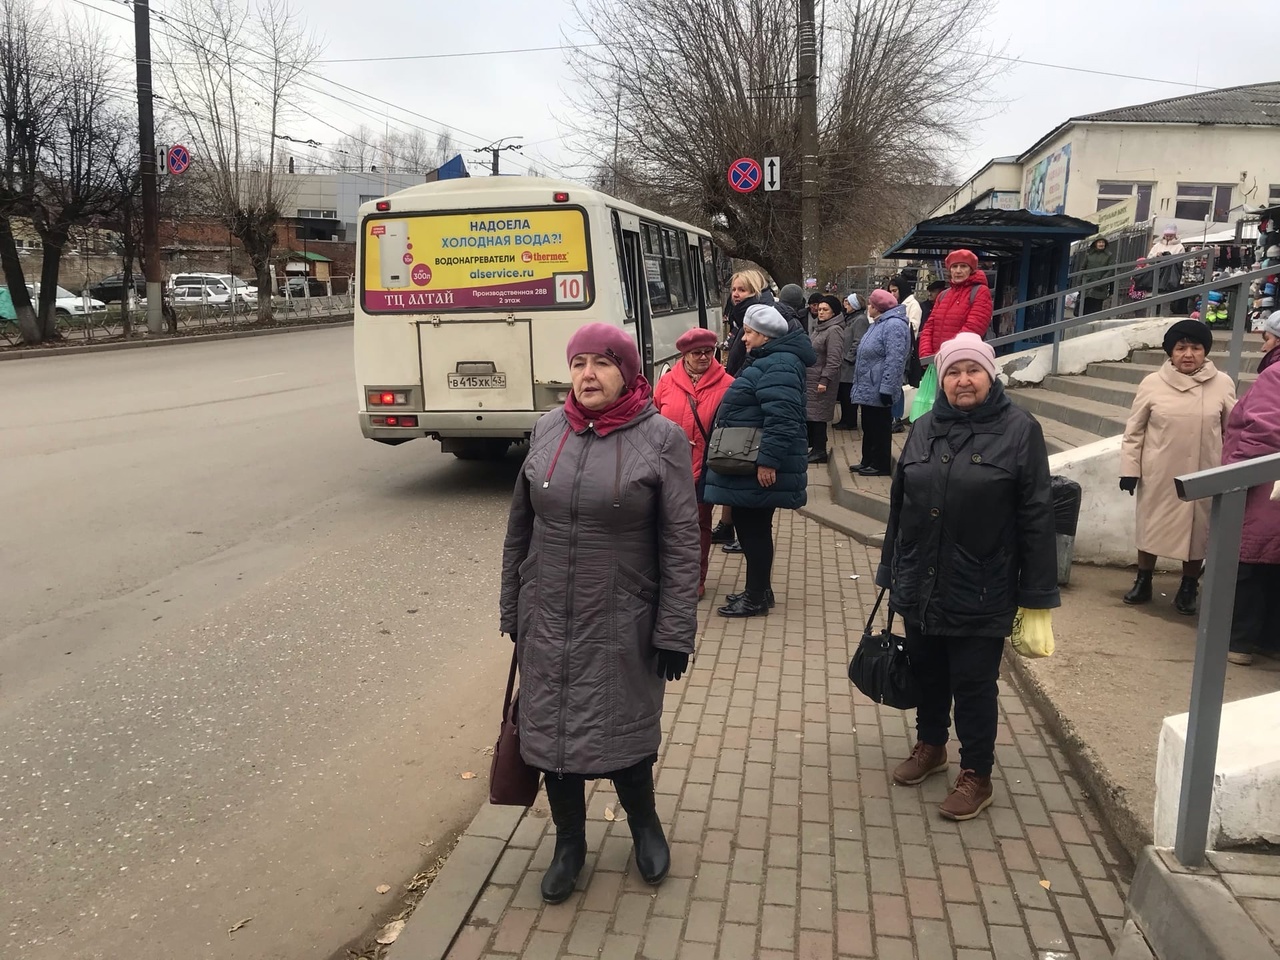 "Кондуктор всем размяла косточки": кировчане пожаловались на общественный транспорт